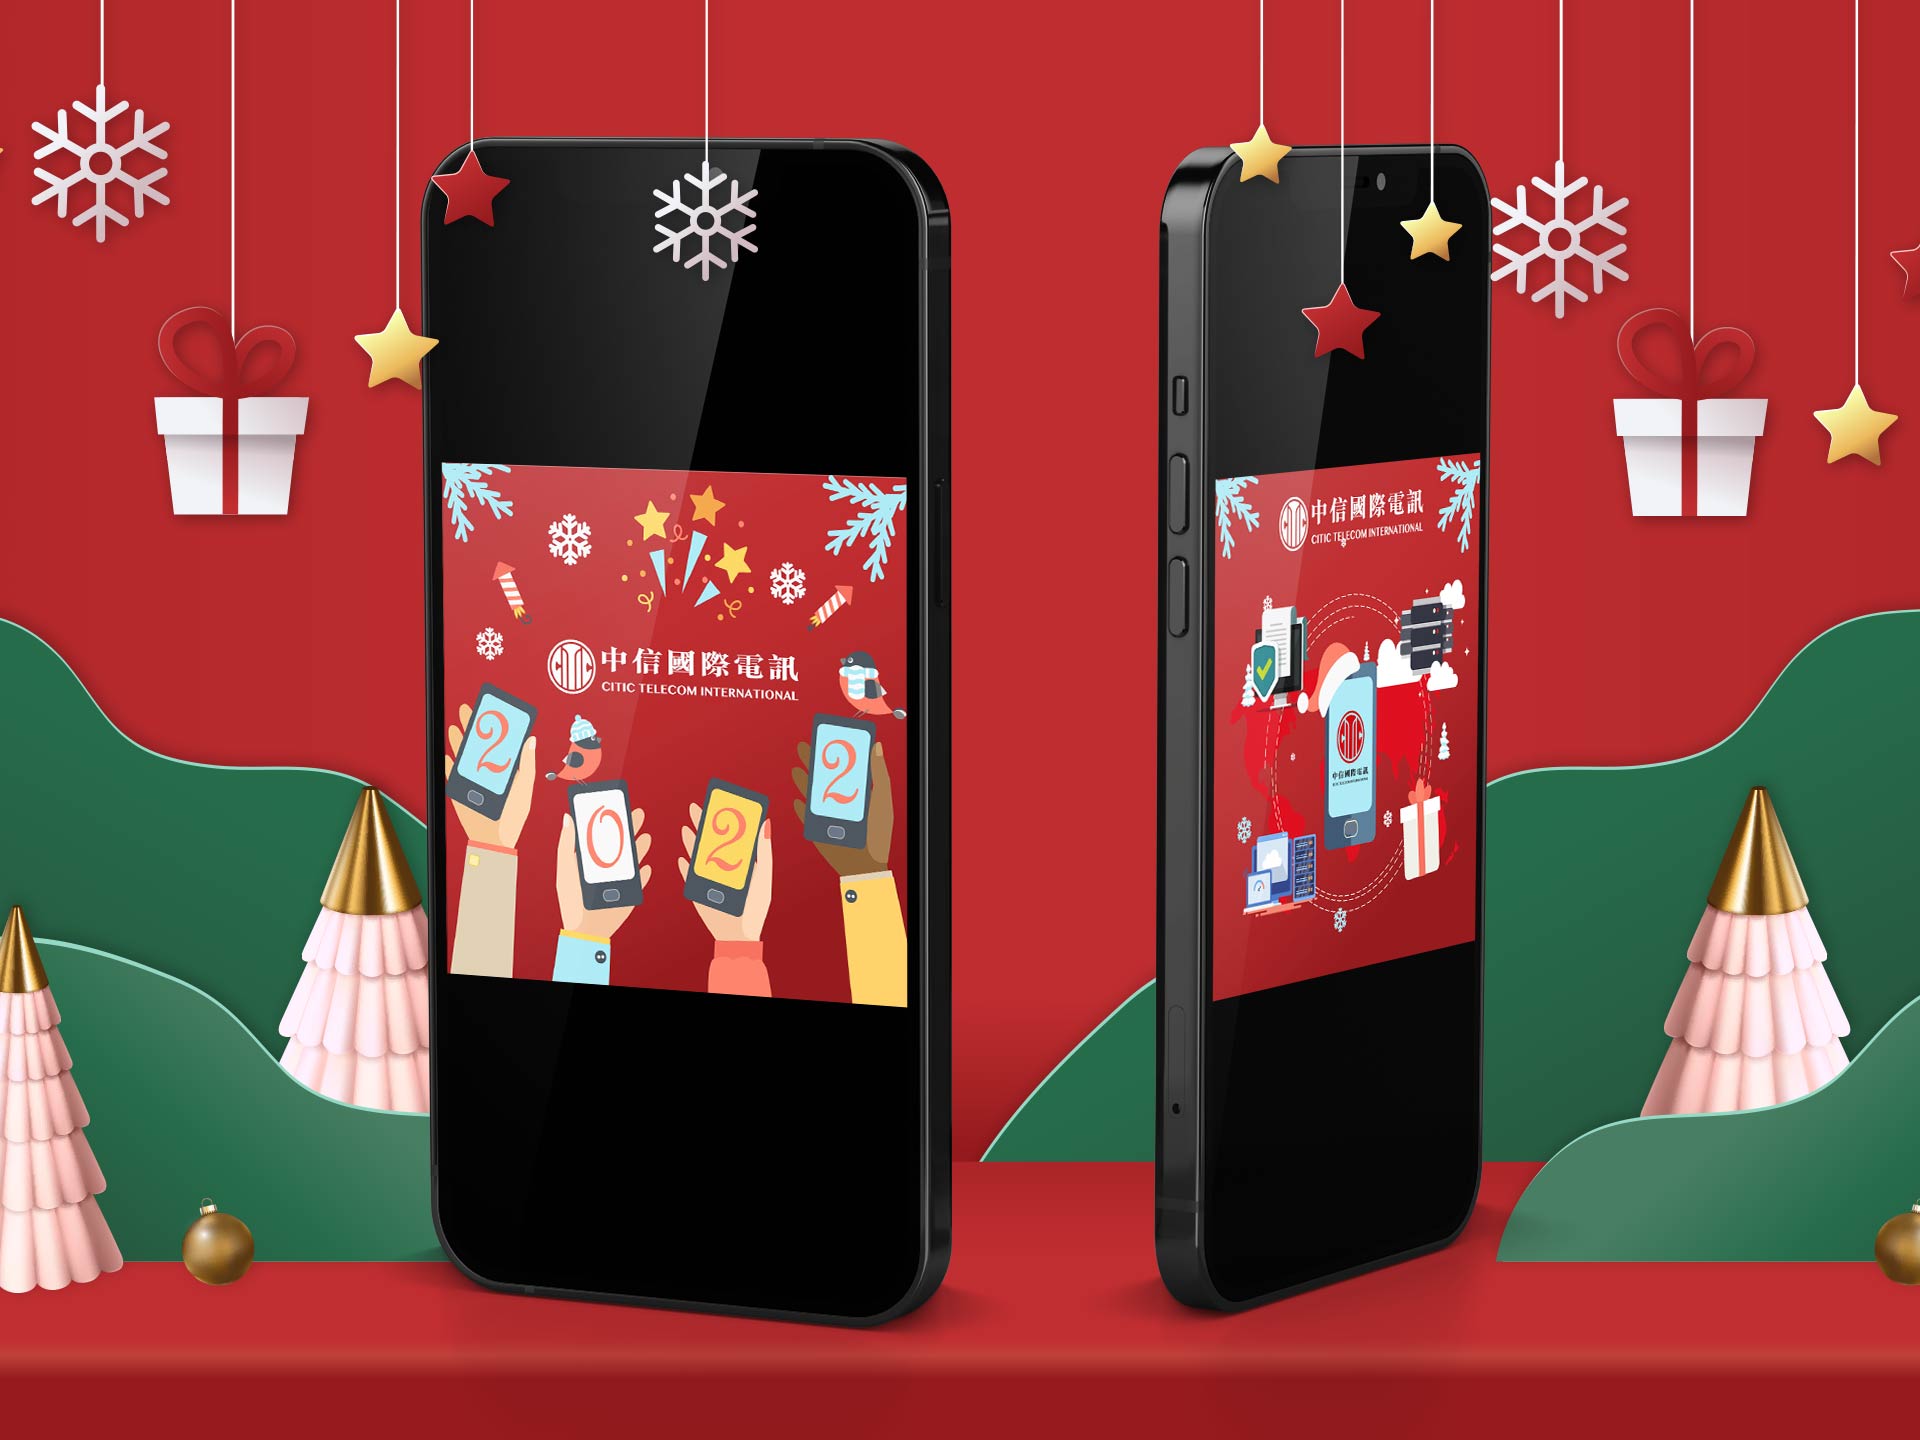 中信国际电讯圣诞电子贺卡 2021